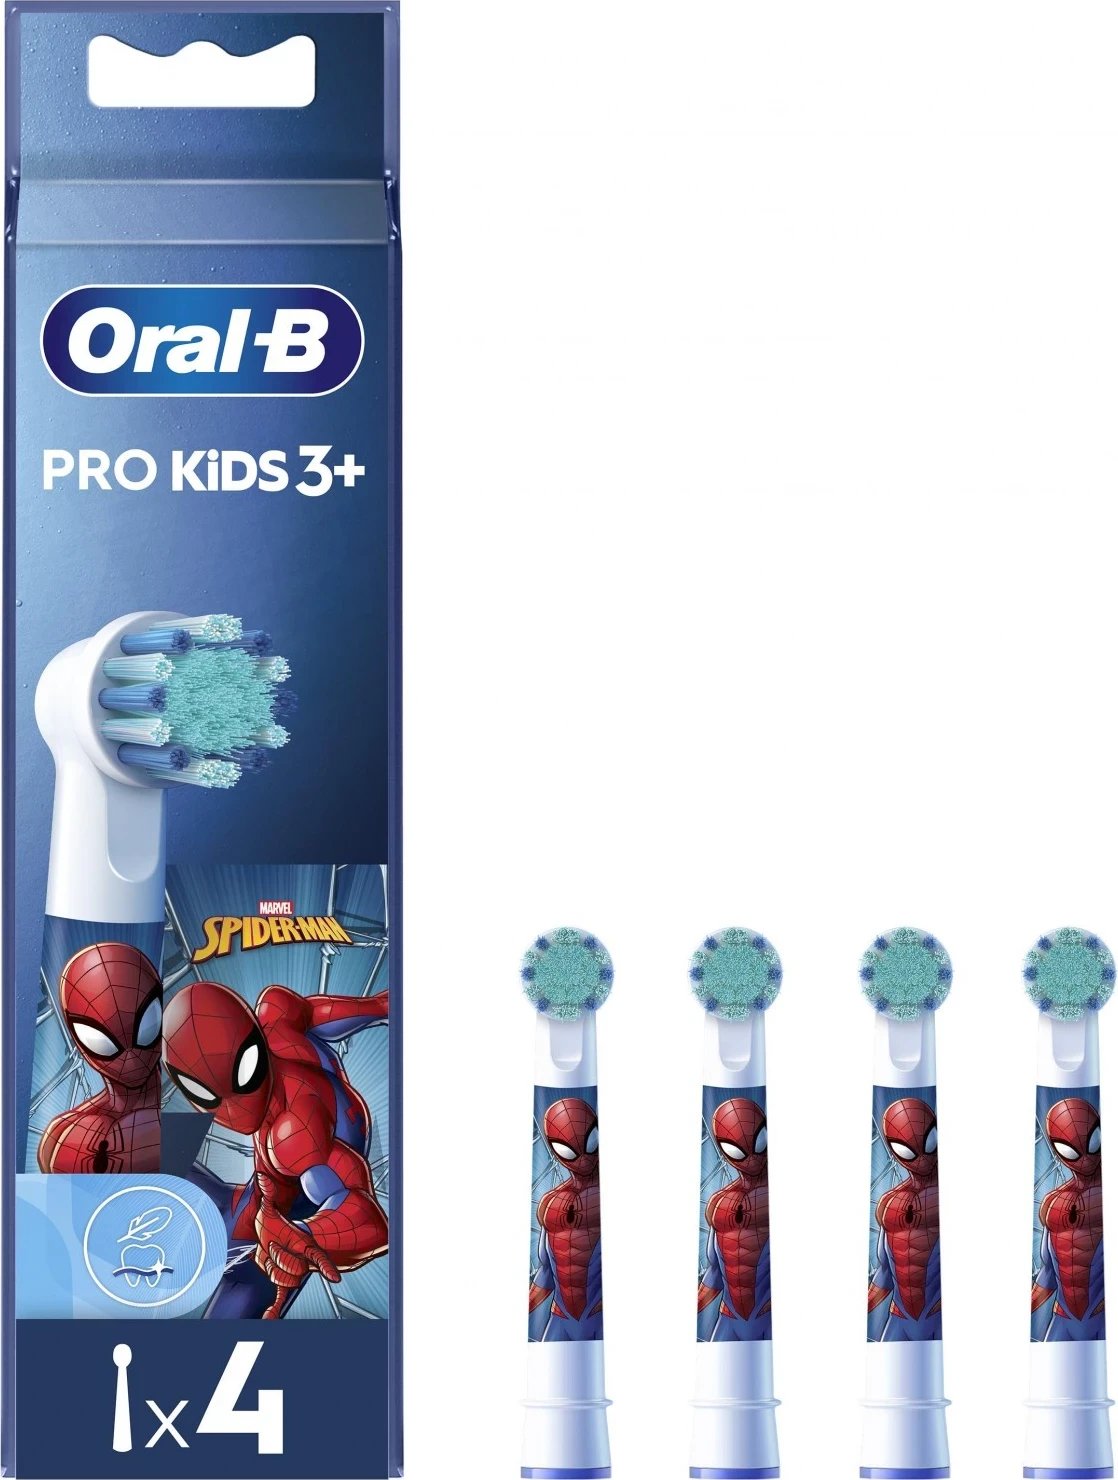 Kokë e furçës Oral-B Pro Kids 3+, me Spiderman